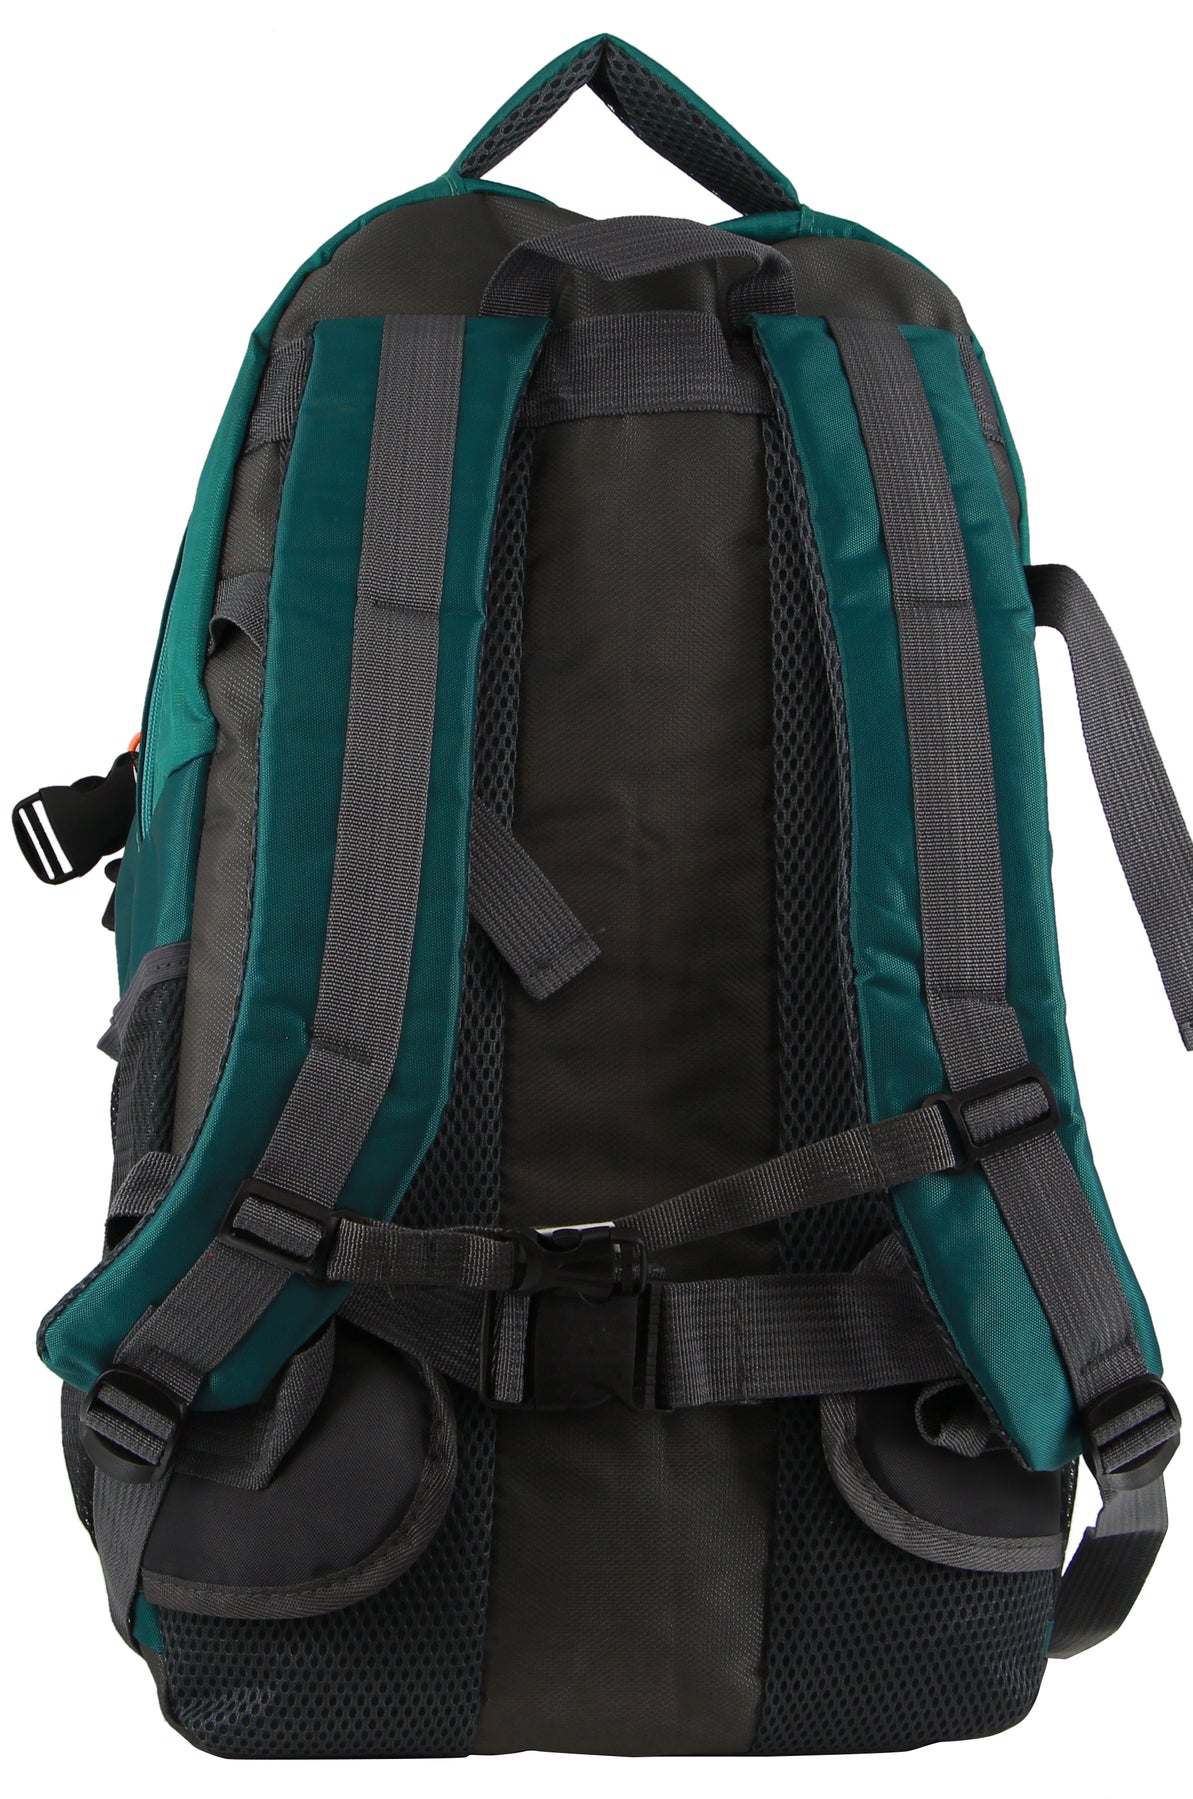 Pierre Cardin - PC3850Laptop Backpack - Green-3